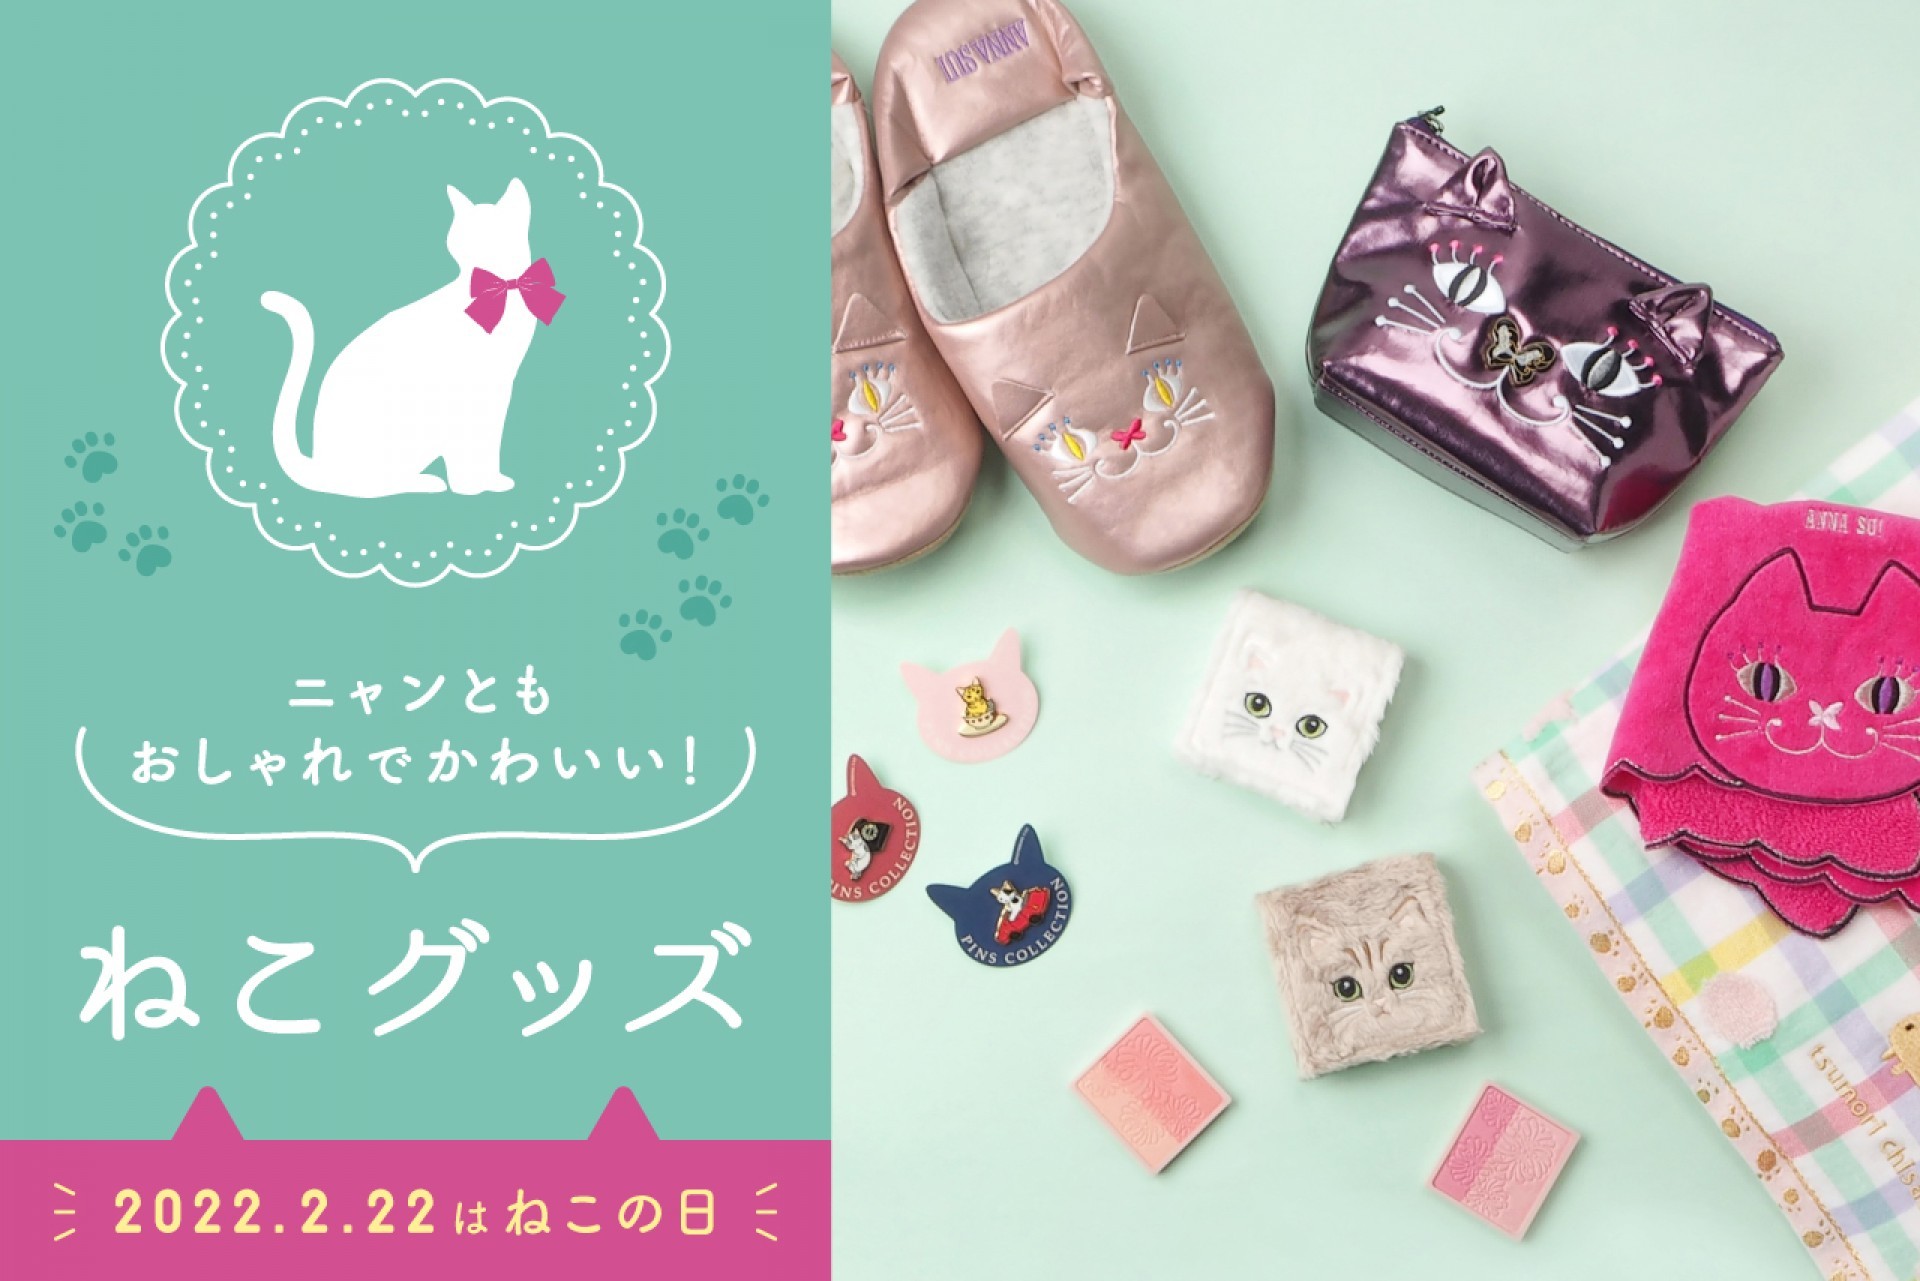 天王寺ミオで購入できるニャンともかわいい猫グッズ 雑貨特集 Mio プラス ミオ